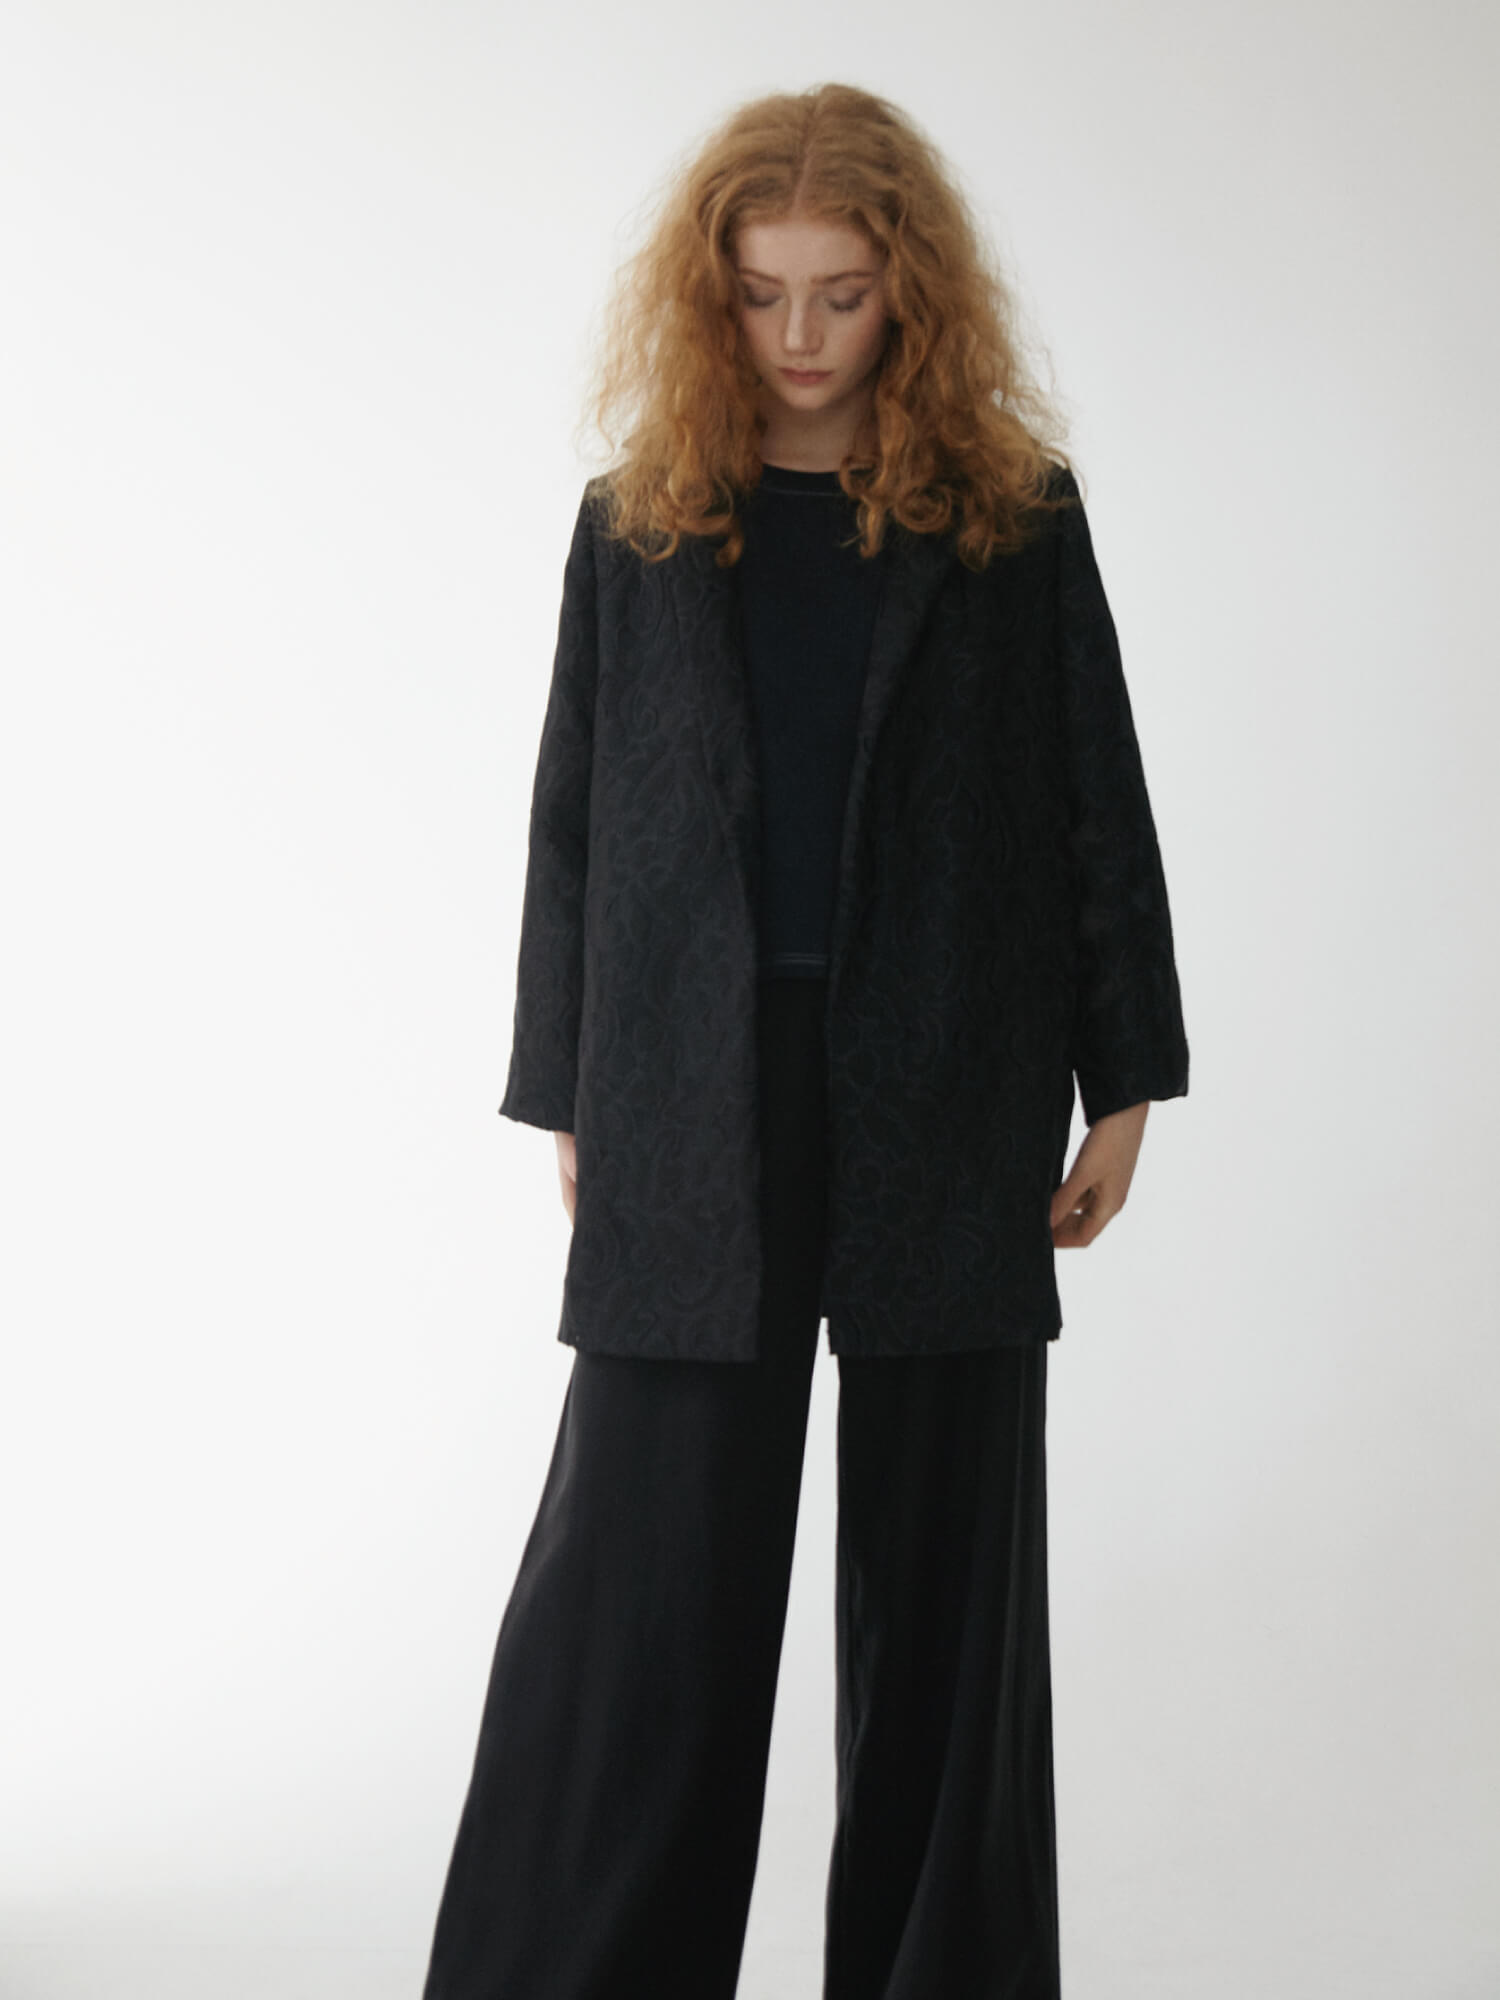 ORES Silk Lace Blazer- New Swedish sustainable fashion